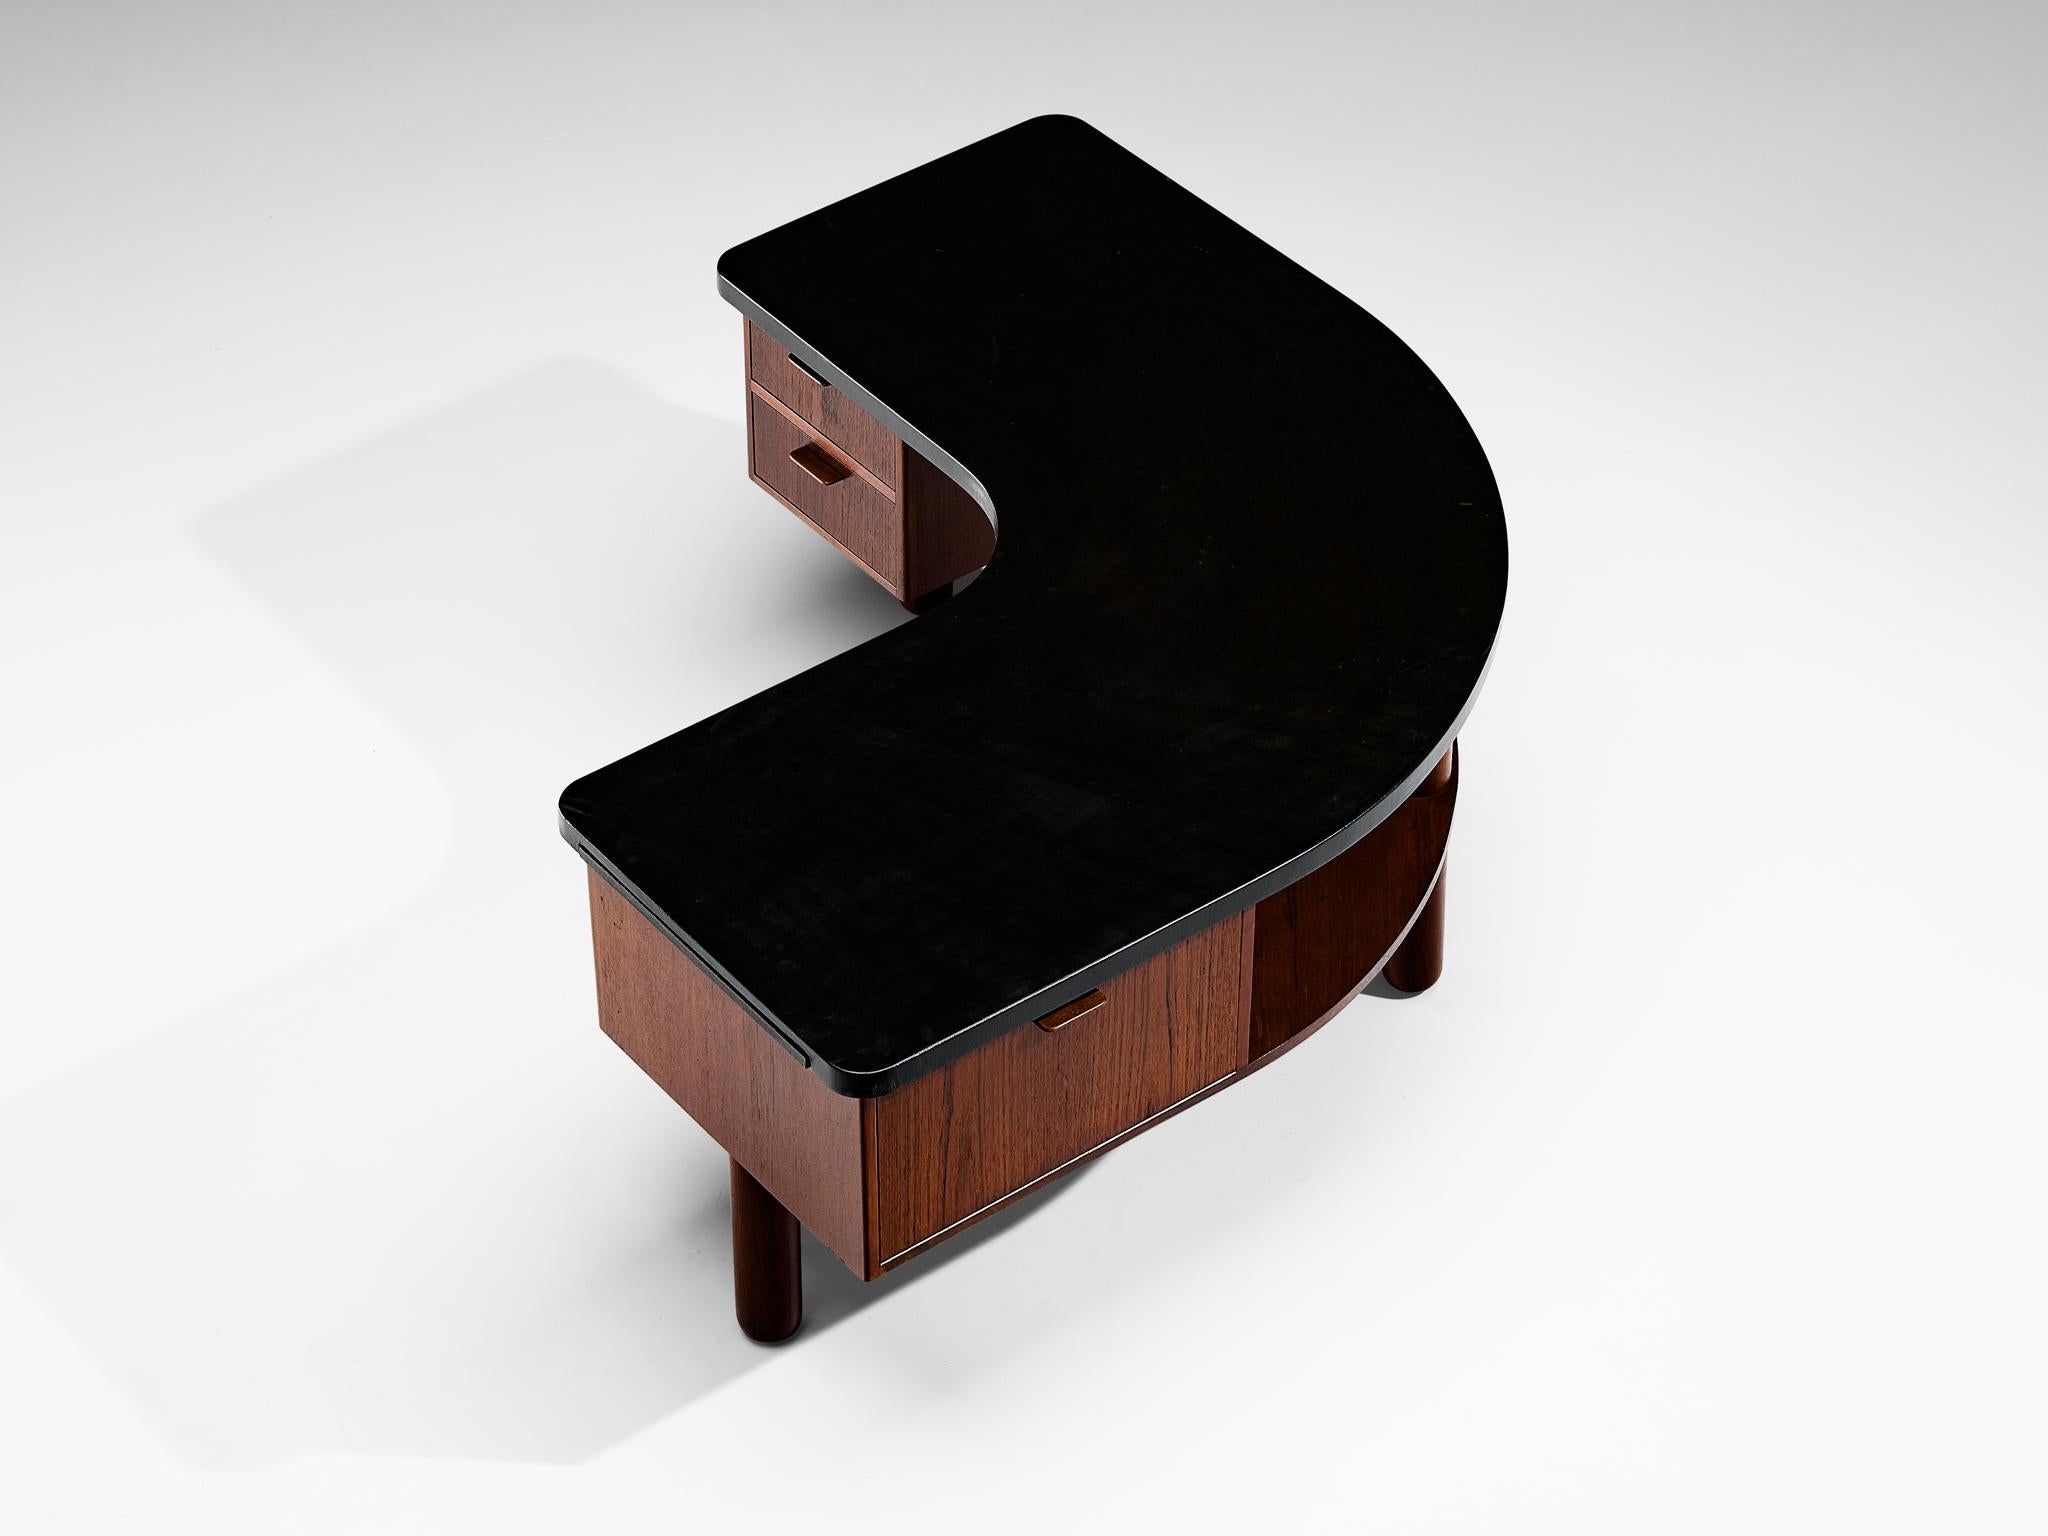 Hos Wulff, freistehender Schreibtisch, Leder, Teakholz, Dänemark, 1940

Dieser freistehende Schreibtisch wurde von Hos Wulff entworfen und stammt aus dem Jahr 1940. Der Schreibtisch ist in seiner Form, seinem MATERIAL und seiner handwerklichen